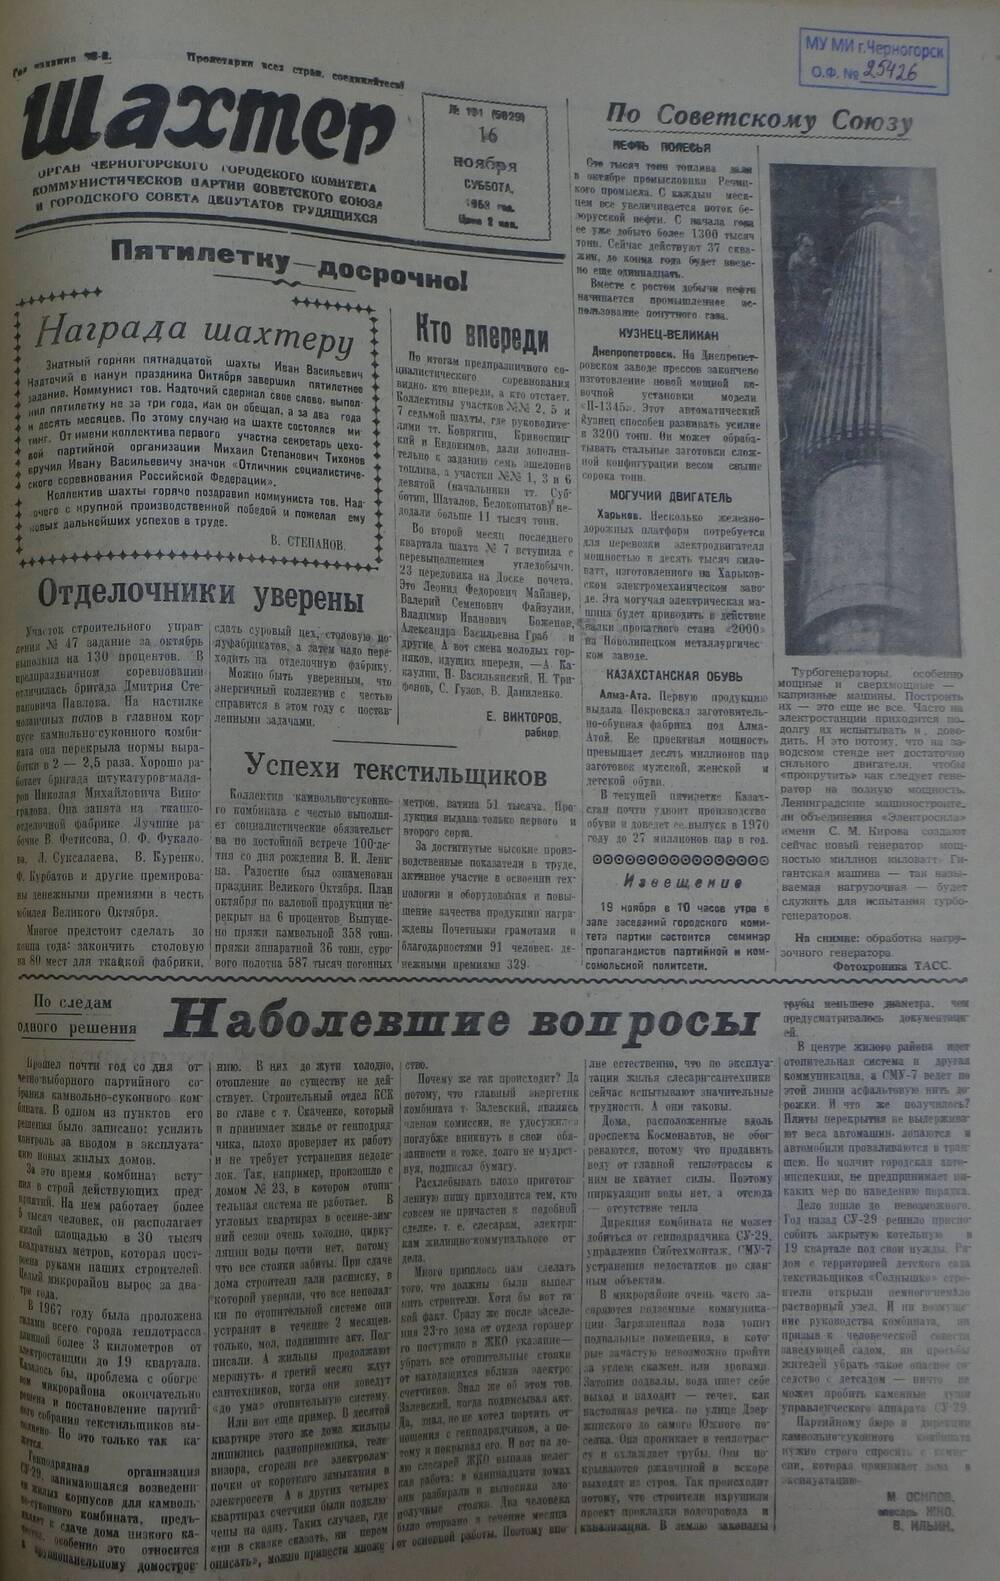 Газета «Шахтер». Выпуск № 131 от 16.11.1968 г.